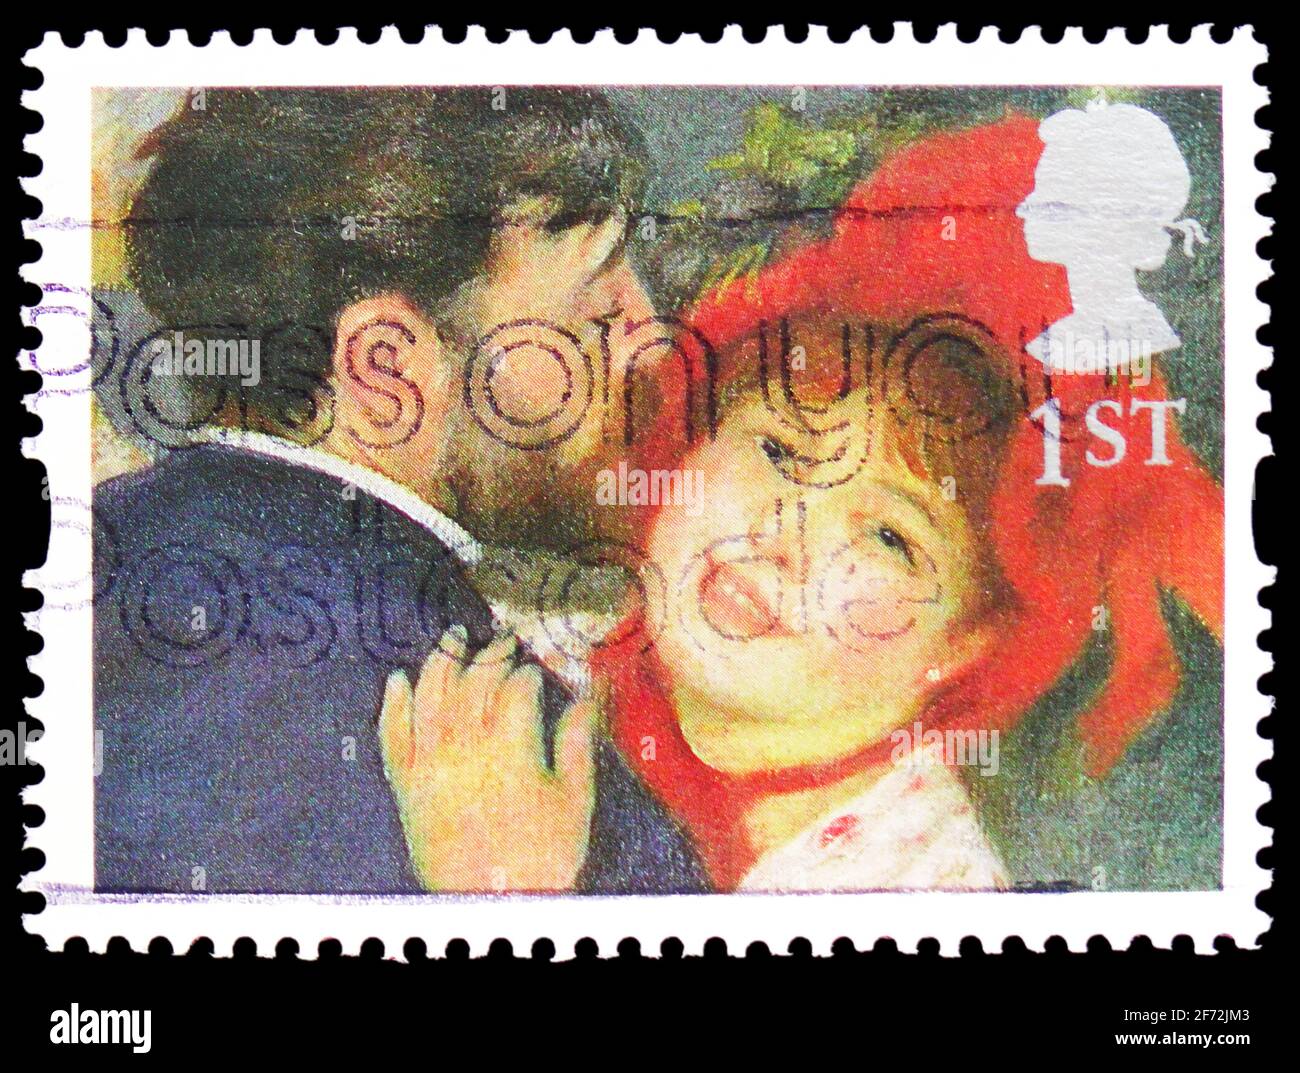 MOSCOU, RUSSIE - 22 DÉCEMBRE 2020: Timbre-poste imprimé au Royaume-Uni montre 'la danse à la campagne' (Renoir), timbres de voeux 1995 - série d'art Banque D'Images